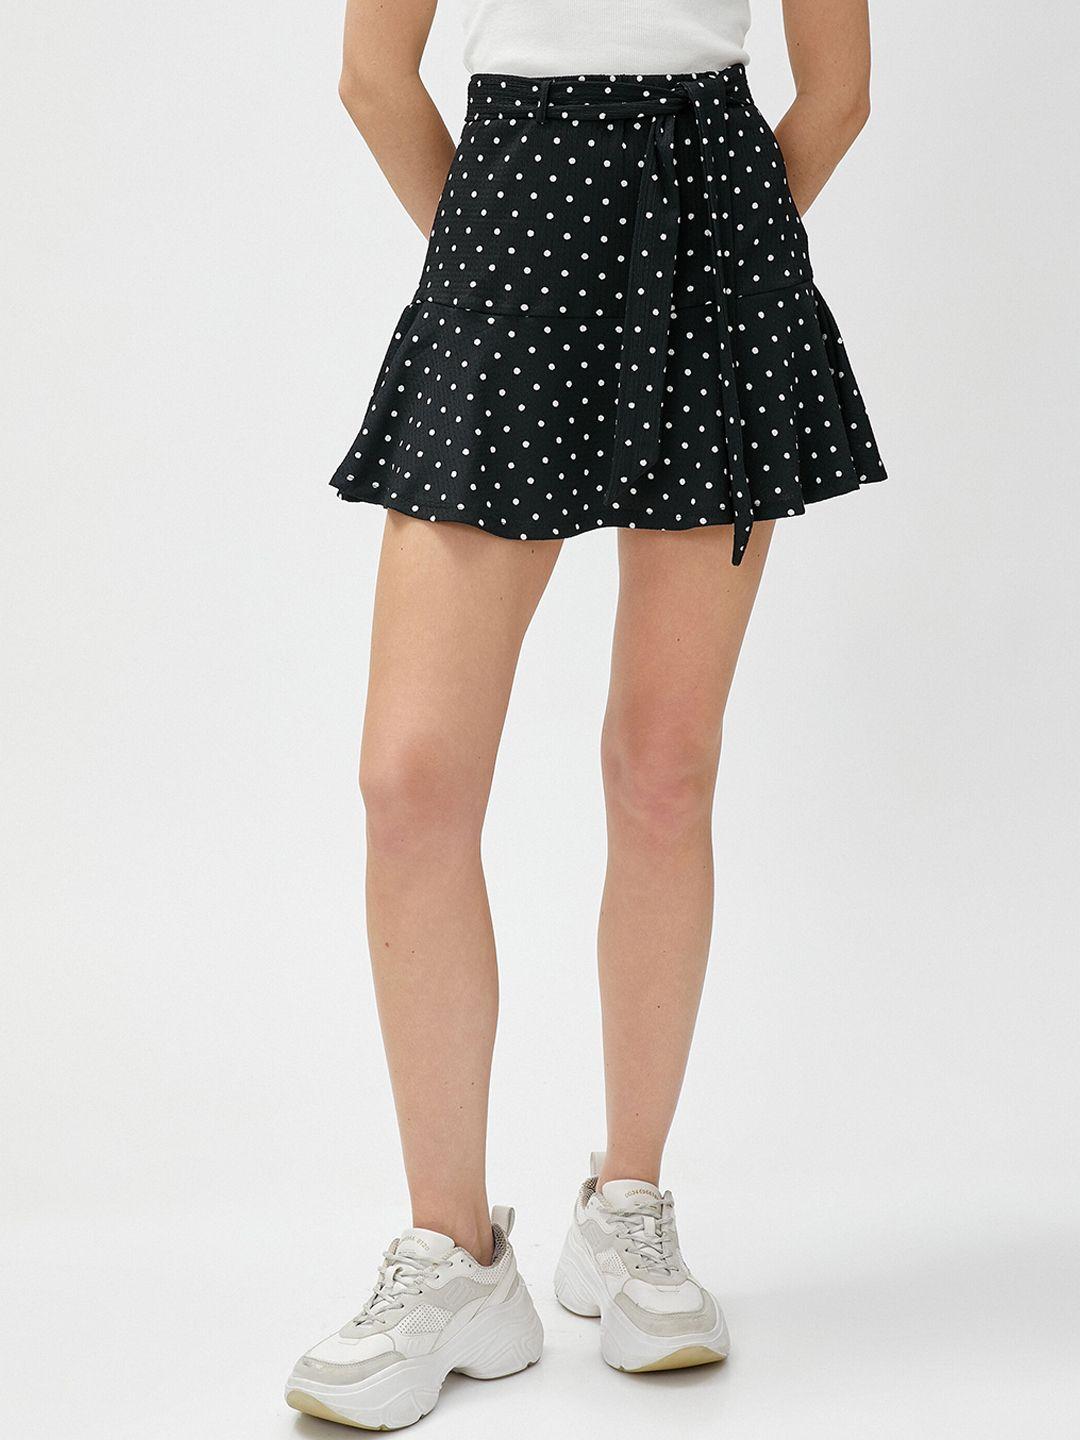 koton women polka dots printed skirts